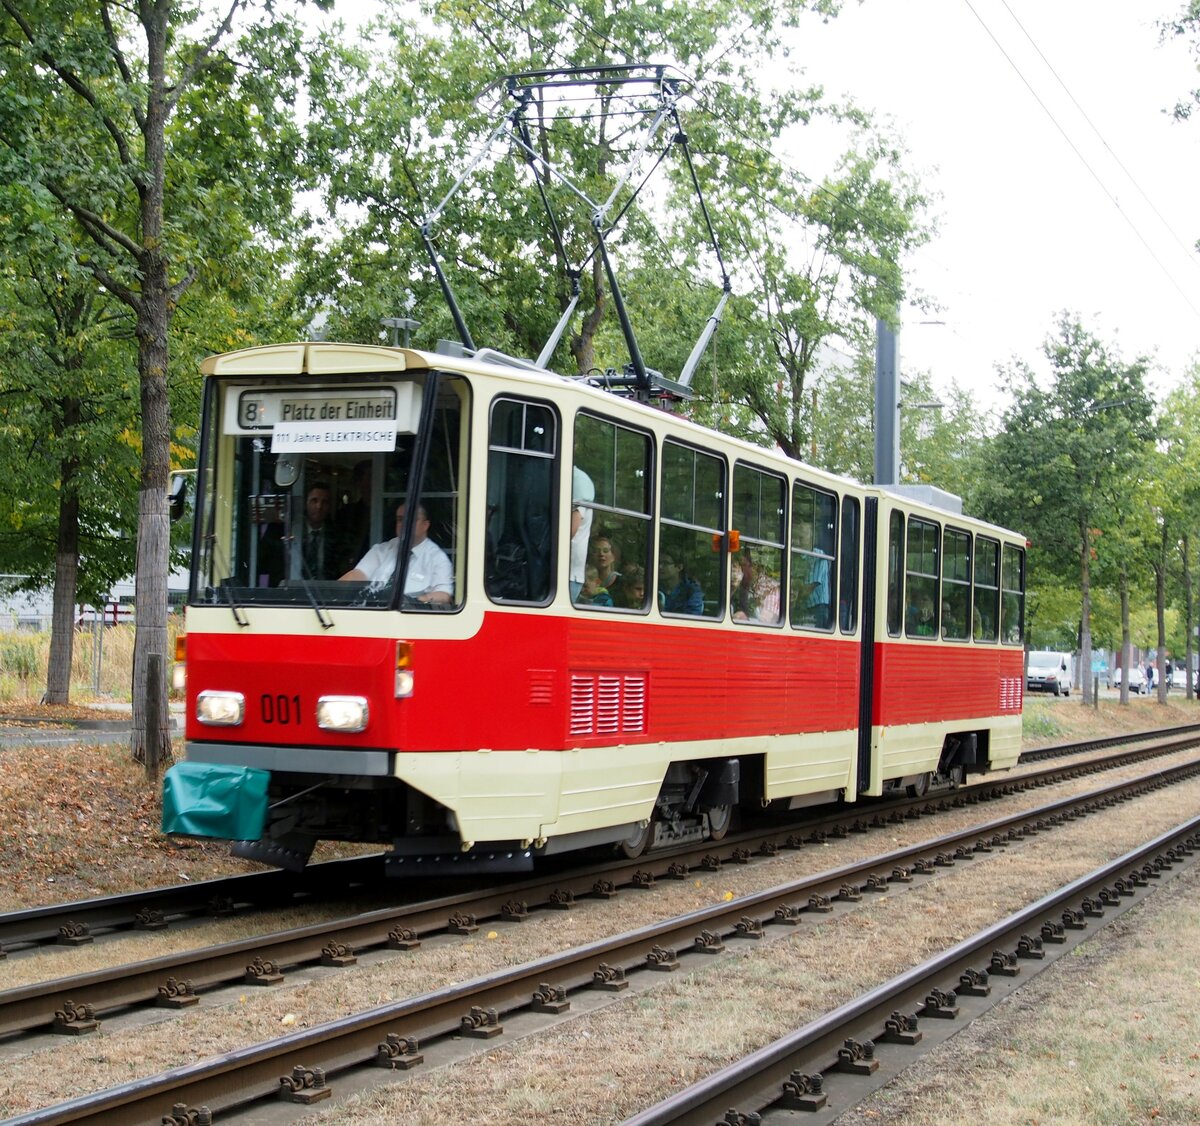 Straßenbahn / Stadtbahn Potsdam; KT4D Nr.001 von CKD Tatra Baujahr 1987 Prototyp beim Jubiläum 111 Jahre elektrische Tram in Potsdam am 02.09.2018.